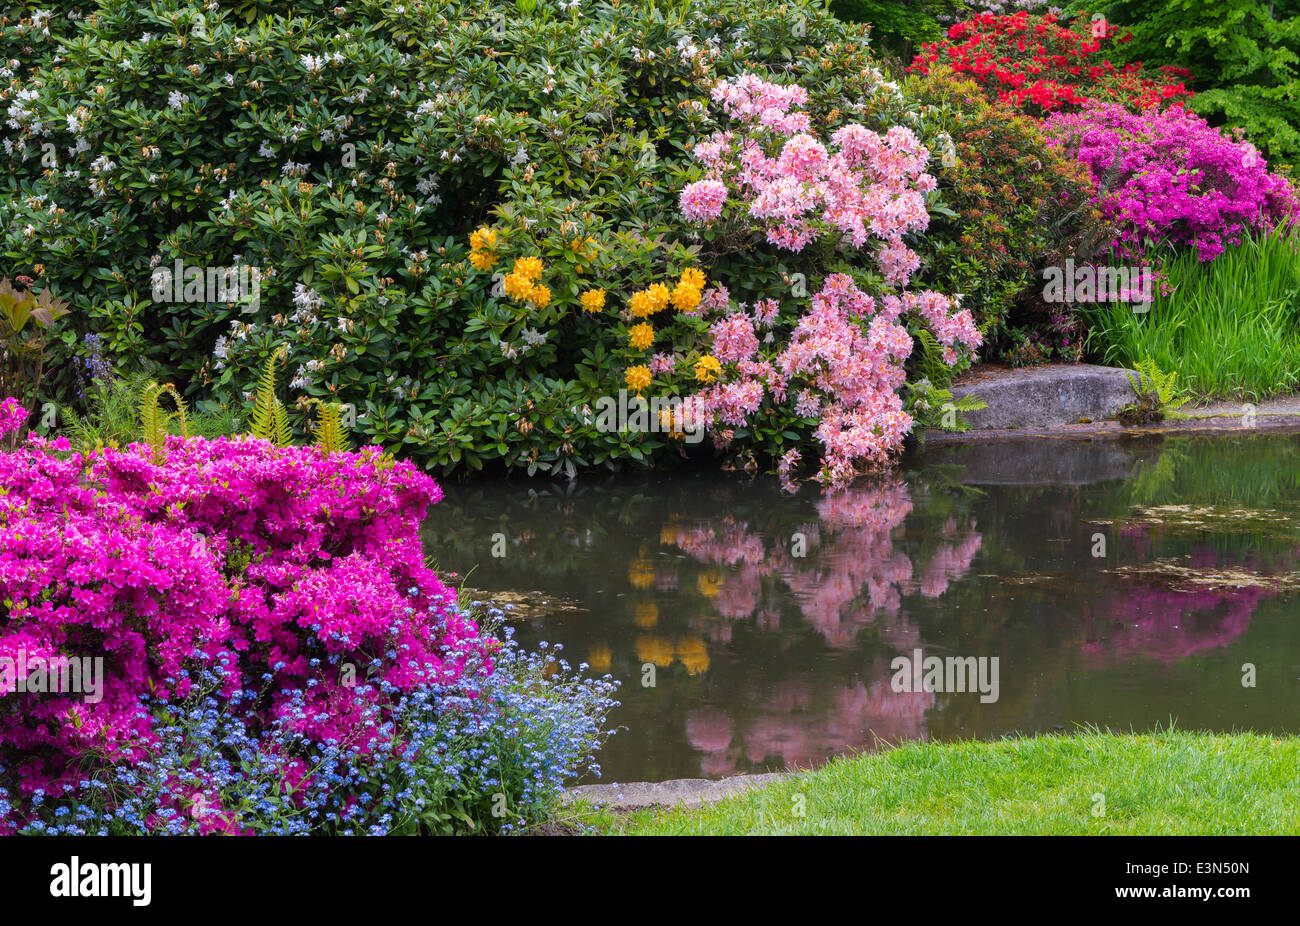 Seattle, WA Kubota Gartenstadt Park, Teich im Tom Kubota Spaziergang Garten mit blühenden Rhododendren Stockfoto